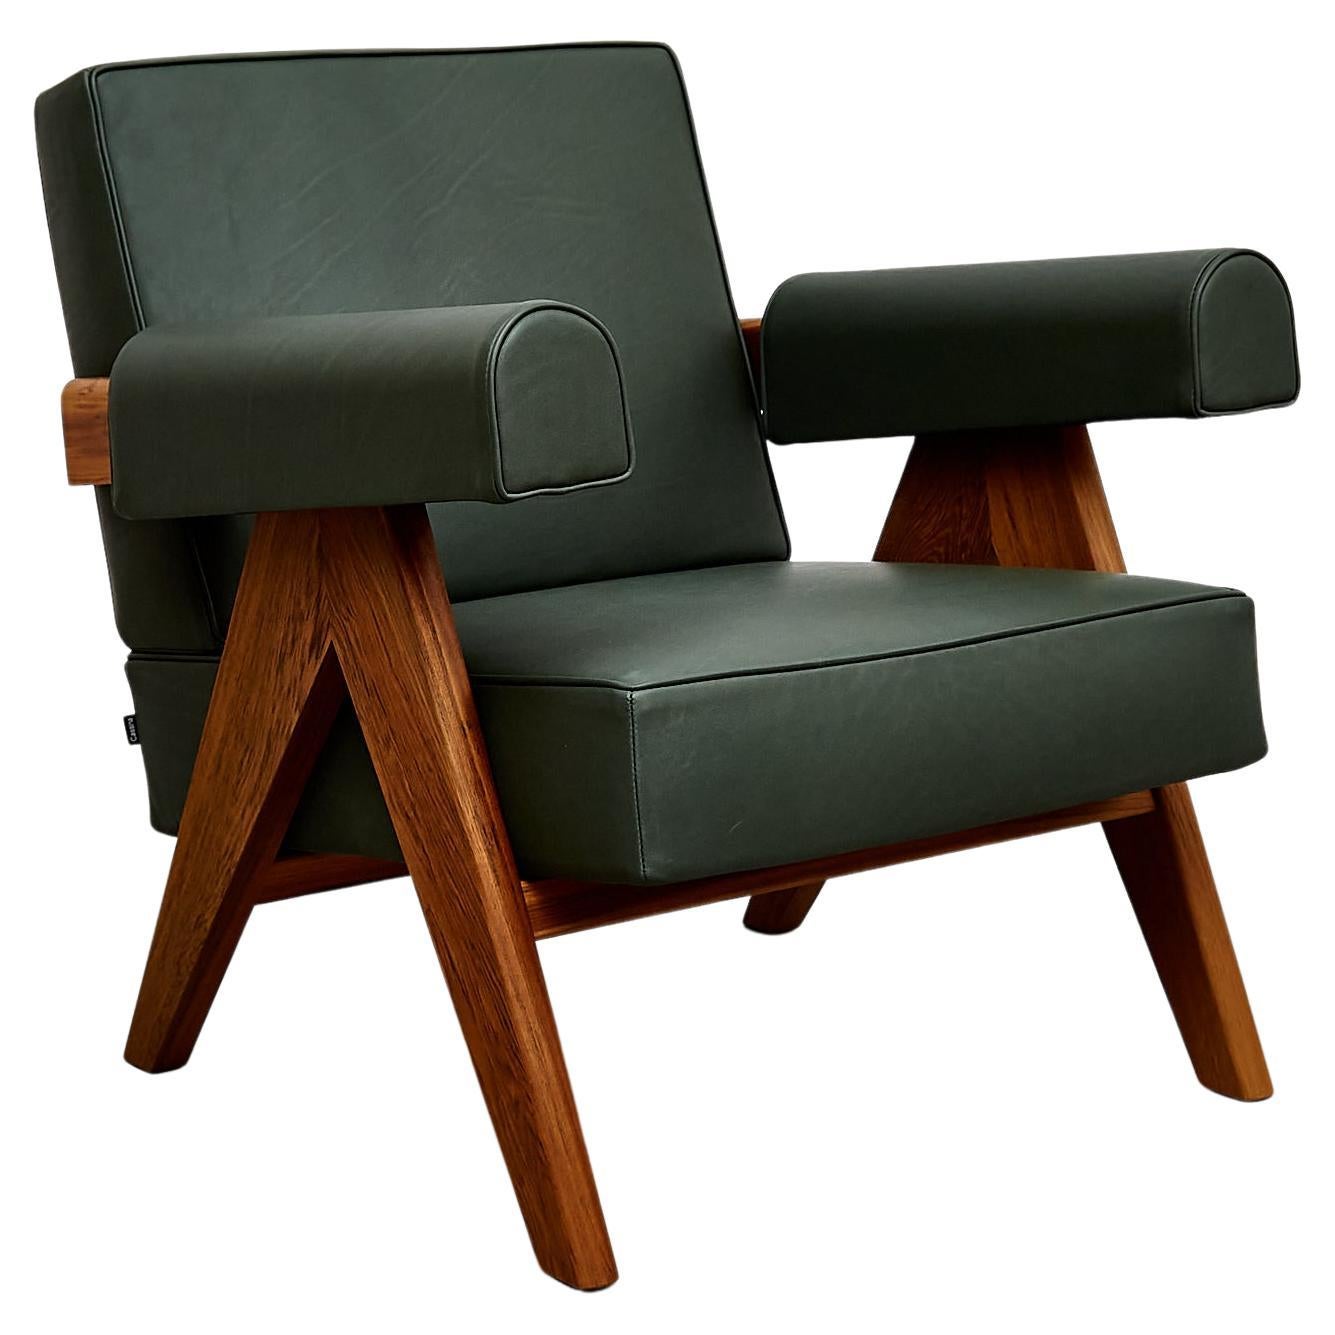 Faites l'expérience d'une élégance intemporelle et d'un savoir-faire exceptionnel avec le fauteuil Pierre Jeanneret, conçu à l'origine vers 1950 et relancé en 2019. Fabriquée par Cassina en Italie, cette pièce emblématique présente un mélange